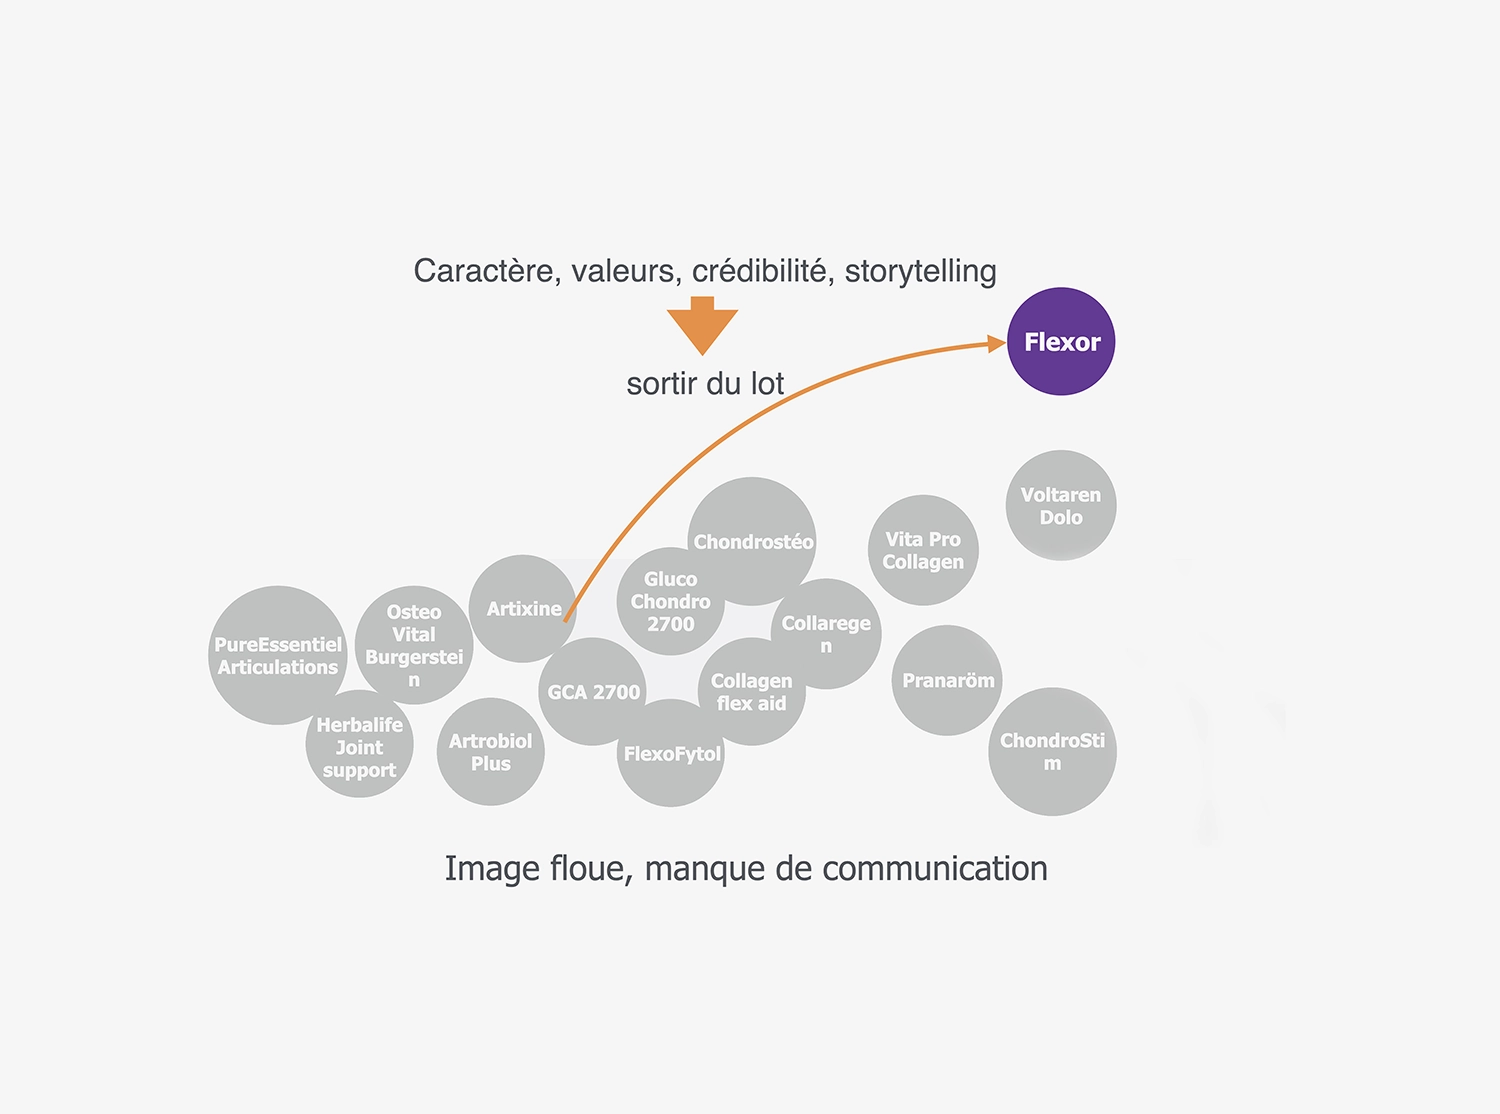 Visuel caractere, valeurs, credibilite, storytelling pour la campagne digitale de Flexor par Ivimedia